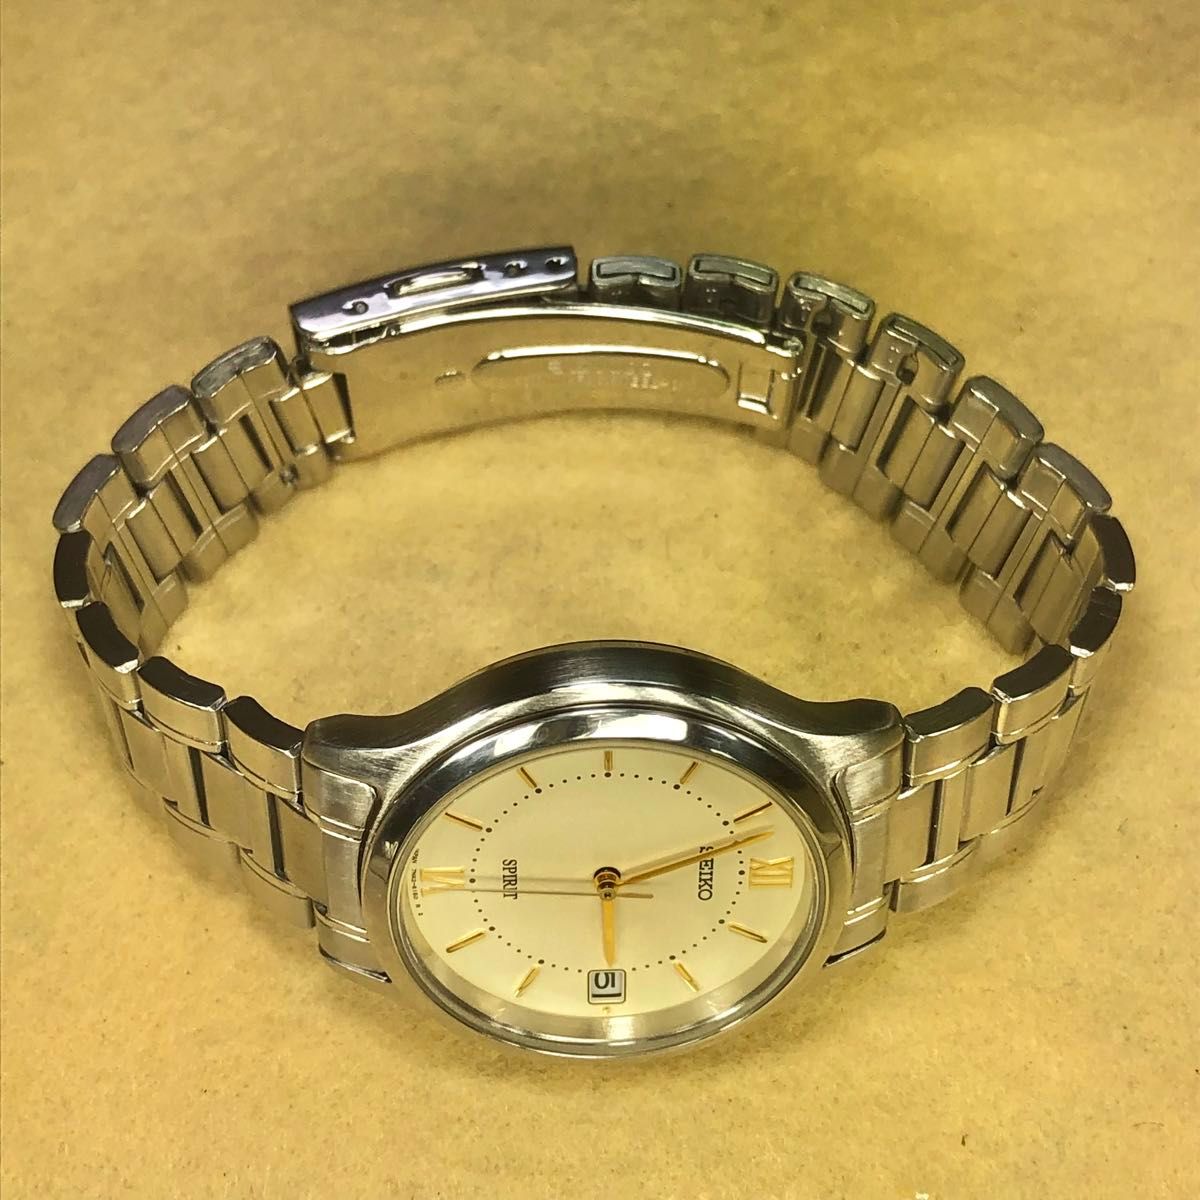 セイコー スピリット 7N42-6110 アナログ クォーツ デイデイト メンズ腕時計